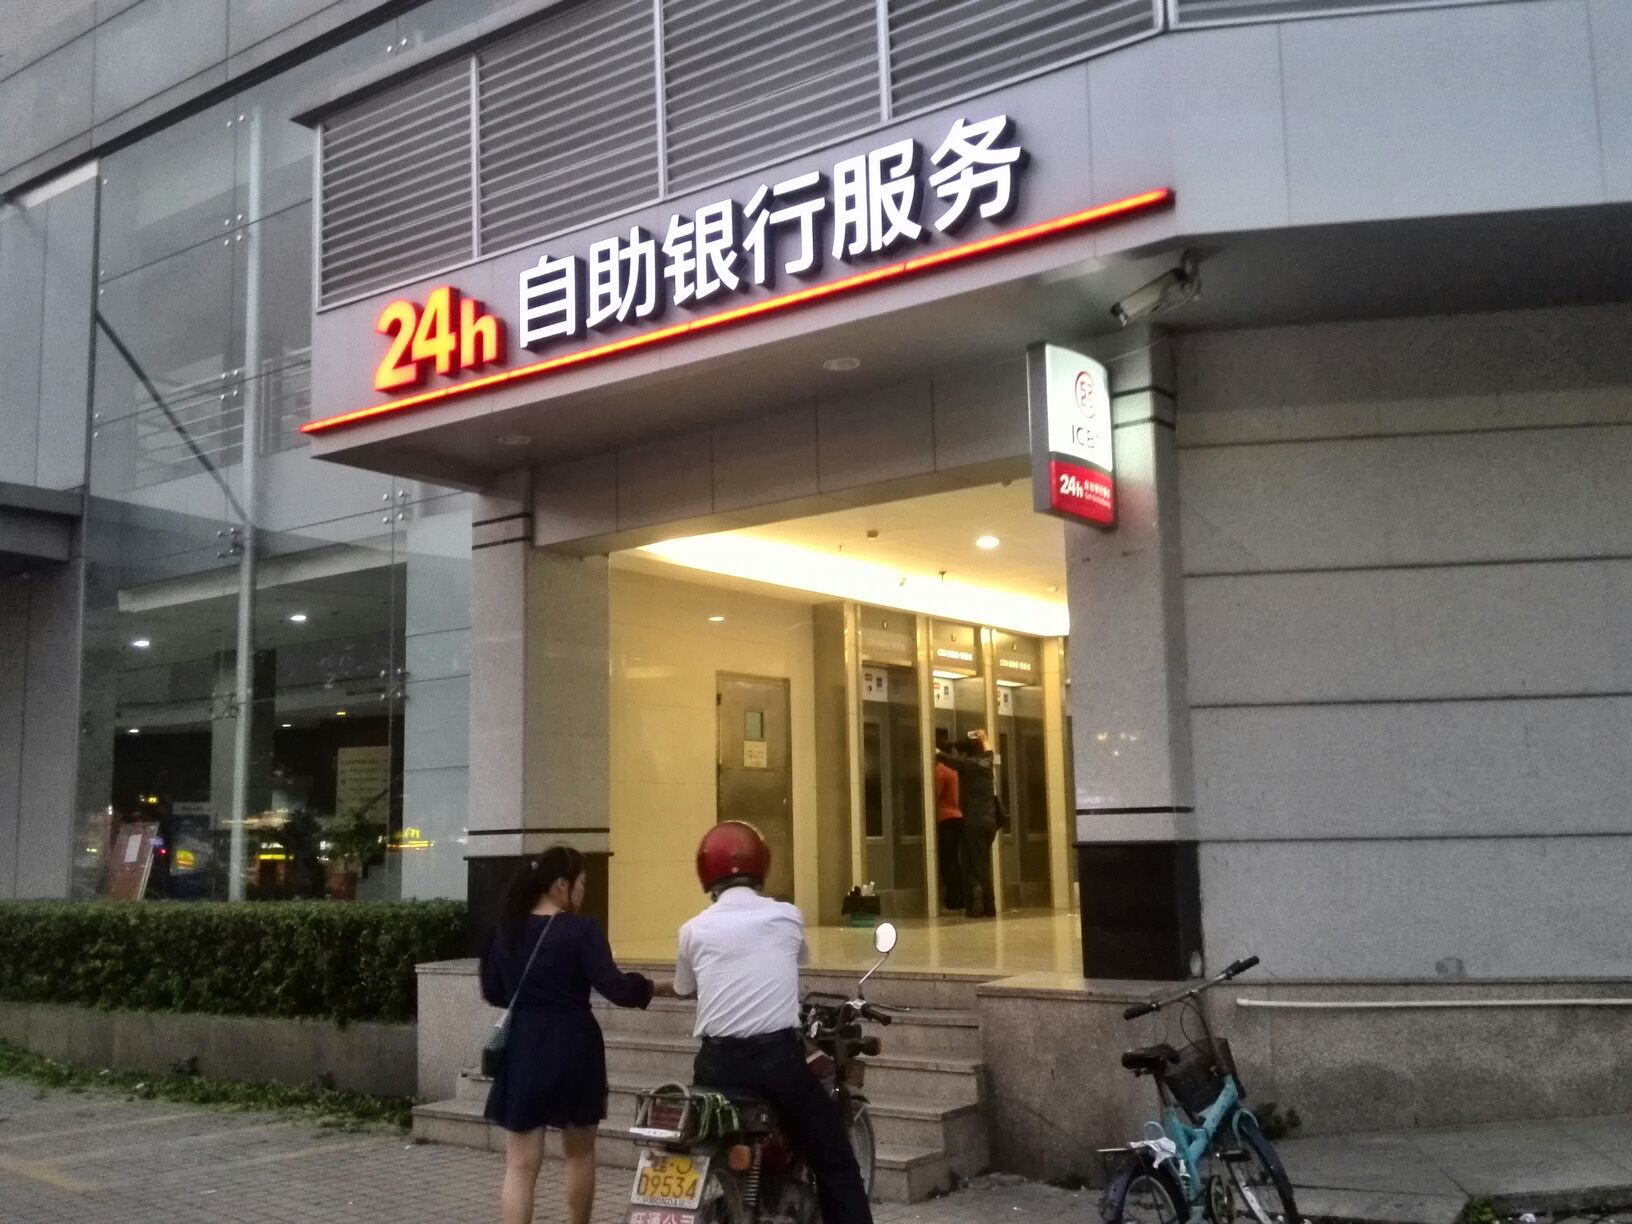 中国工商银行24小时自助银行(中山南头支行)